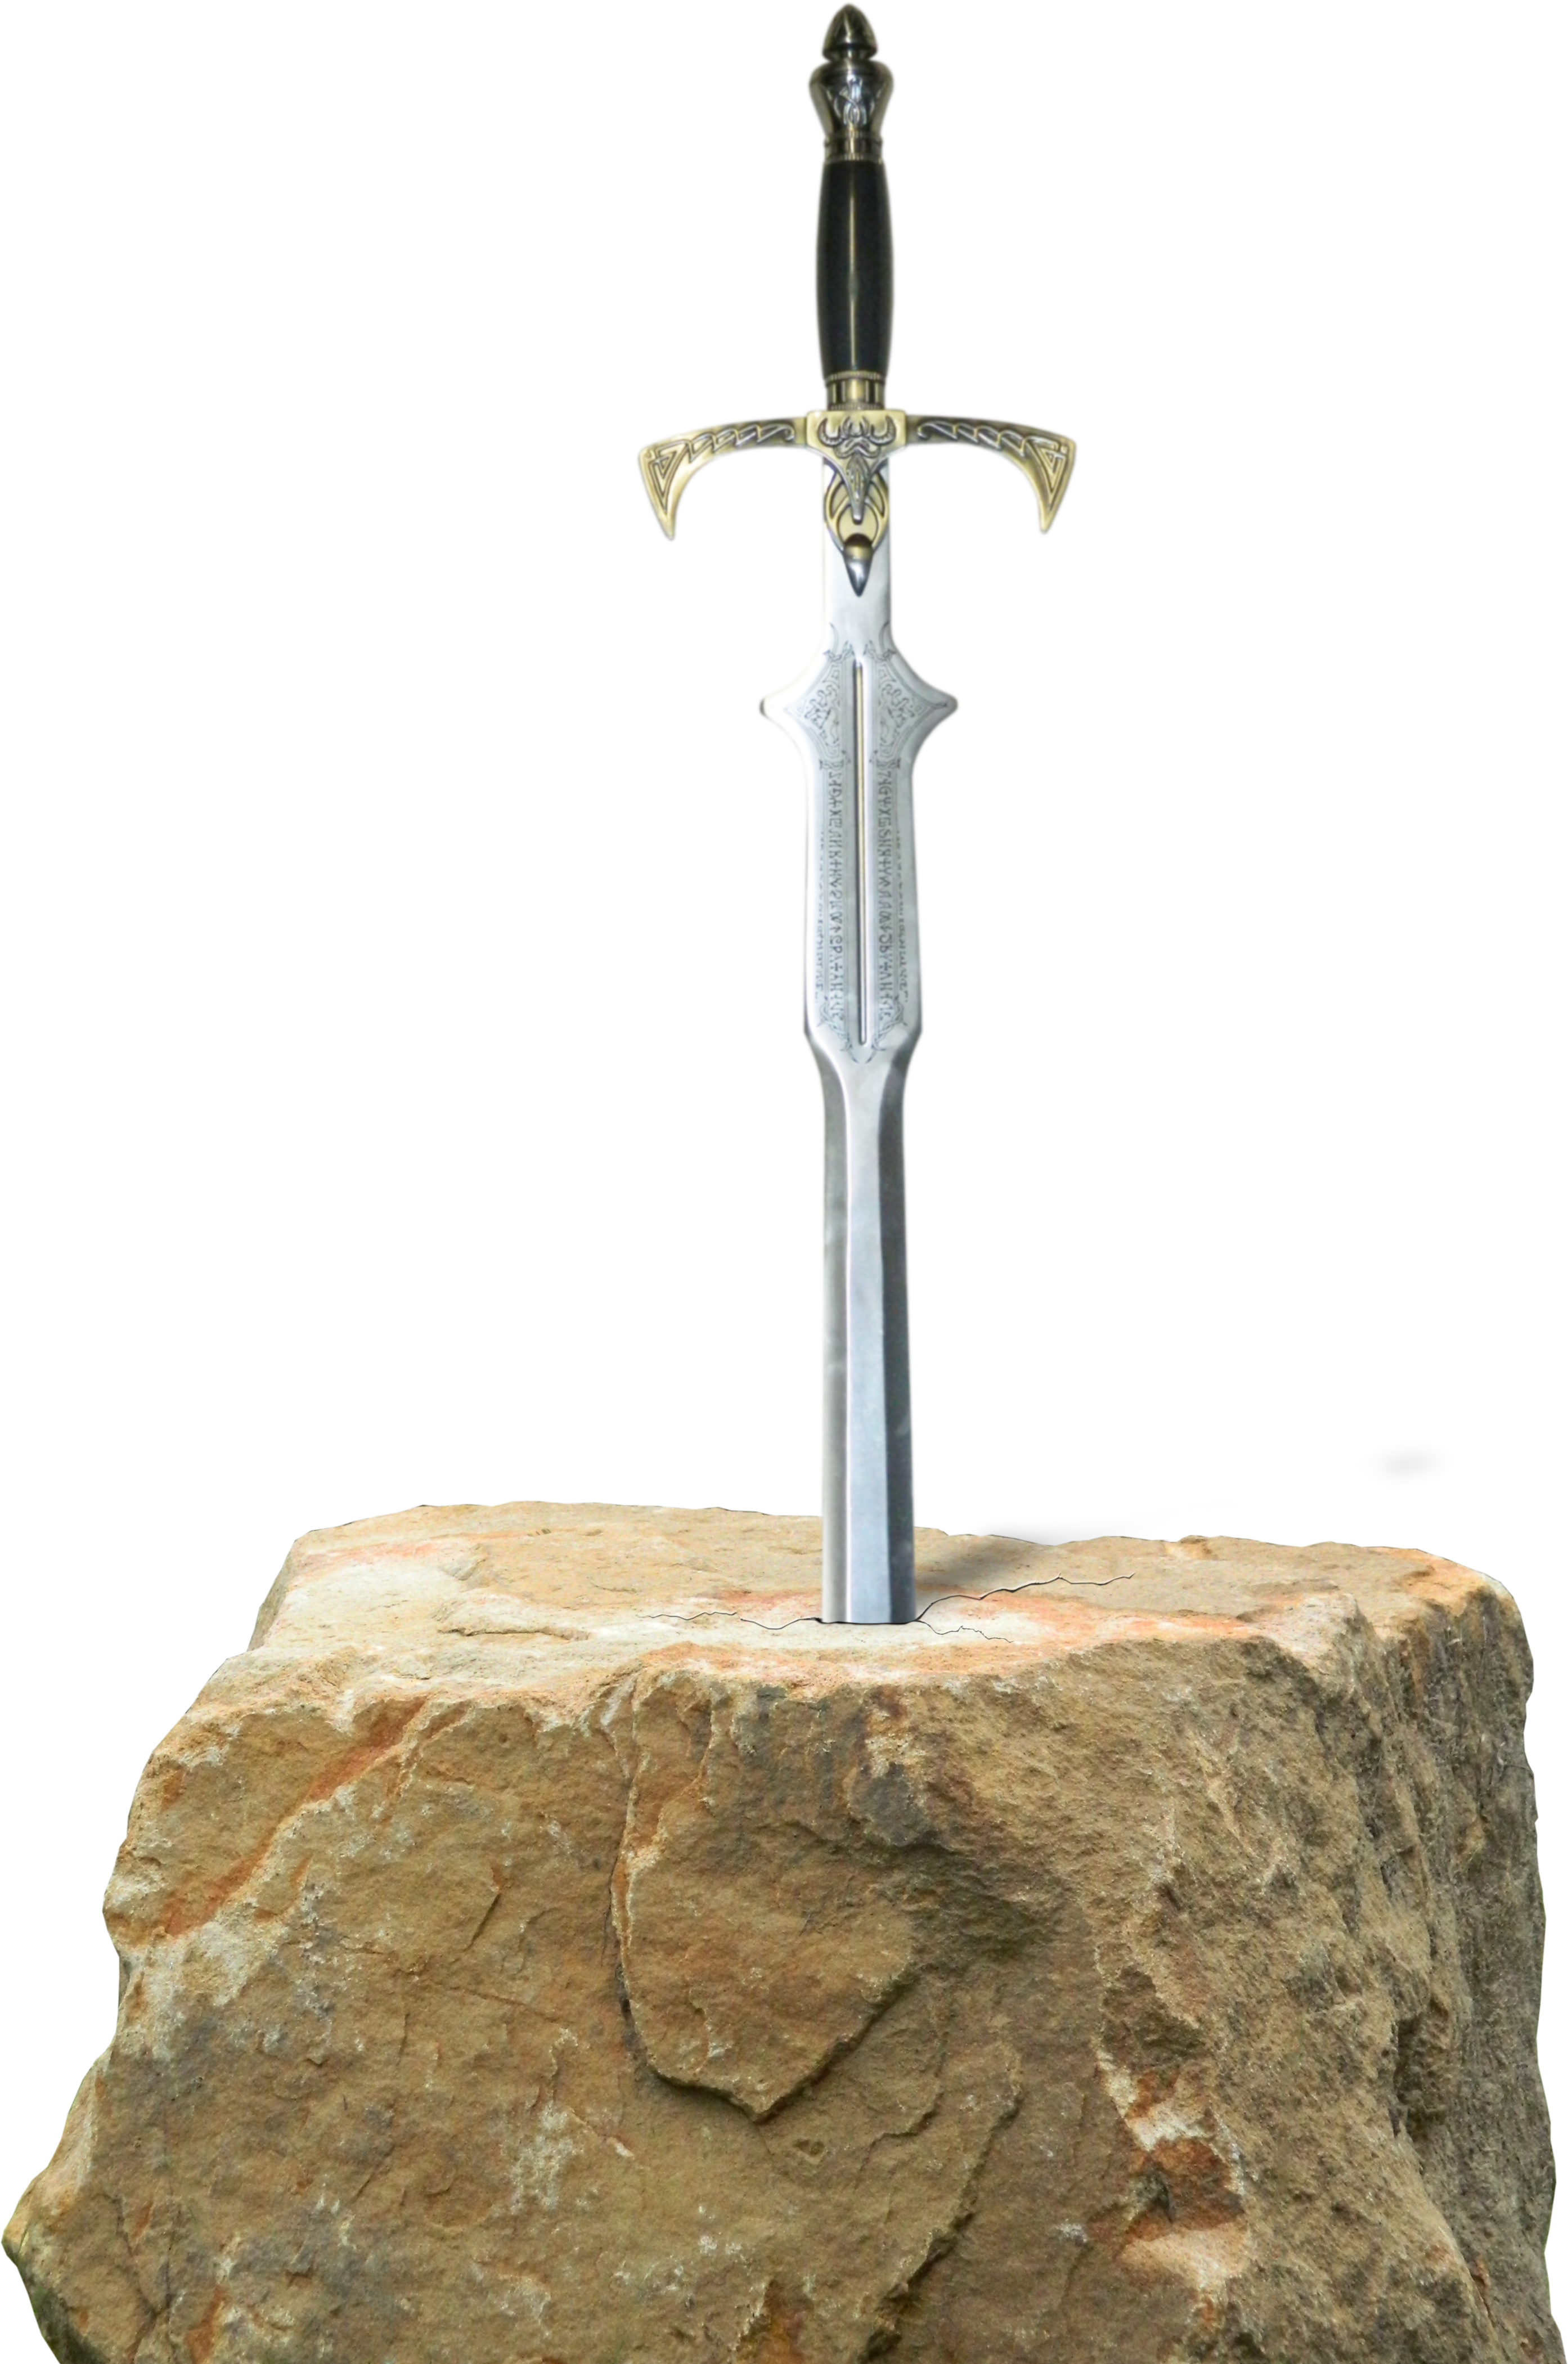  فایل png بسیار جالب از شمشیر بسیار تیز در سنگ با کیفیت دیدنی